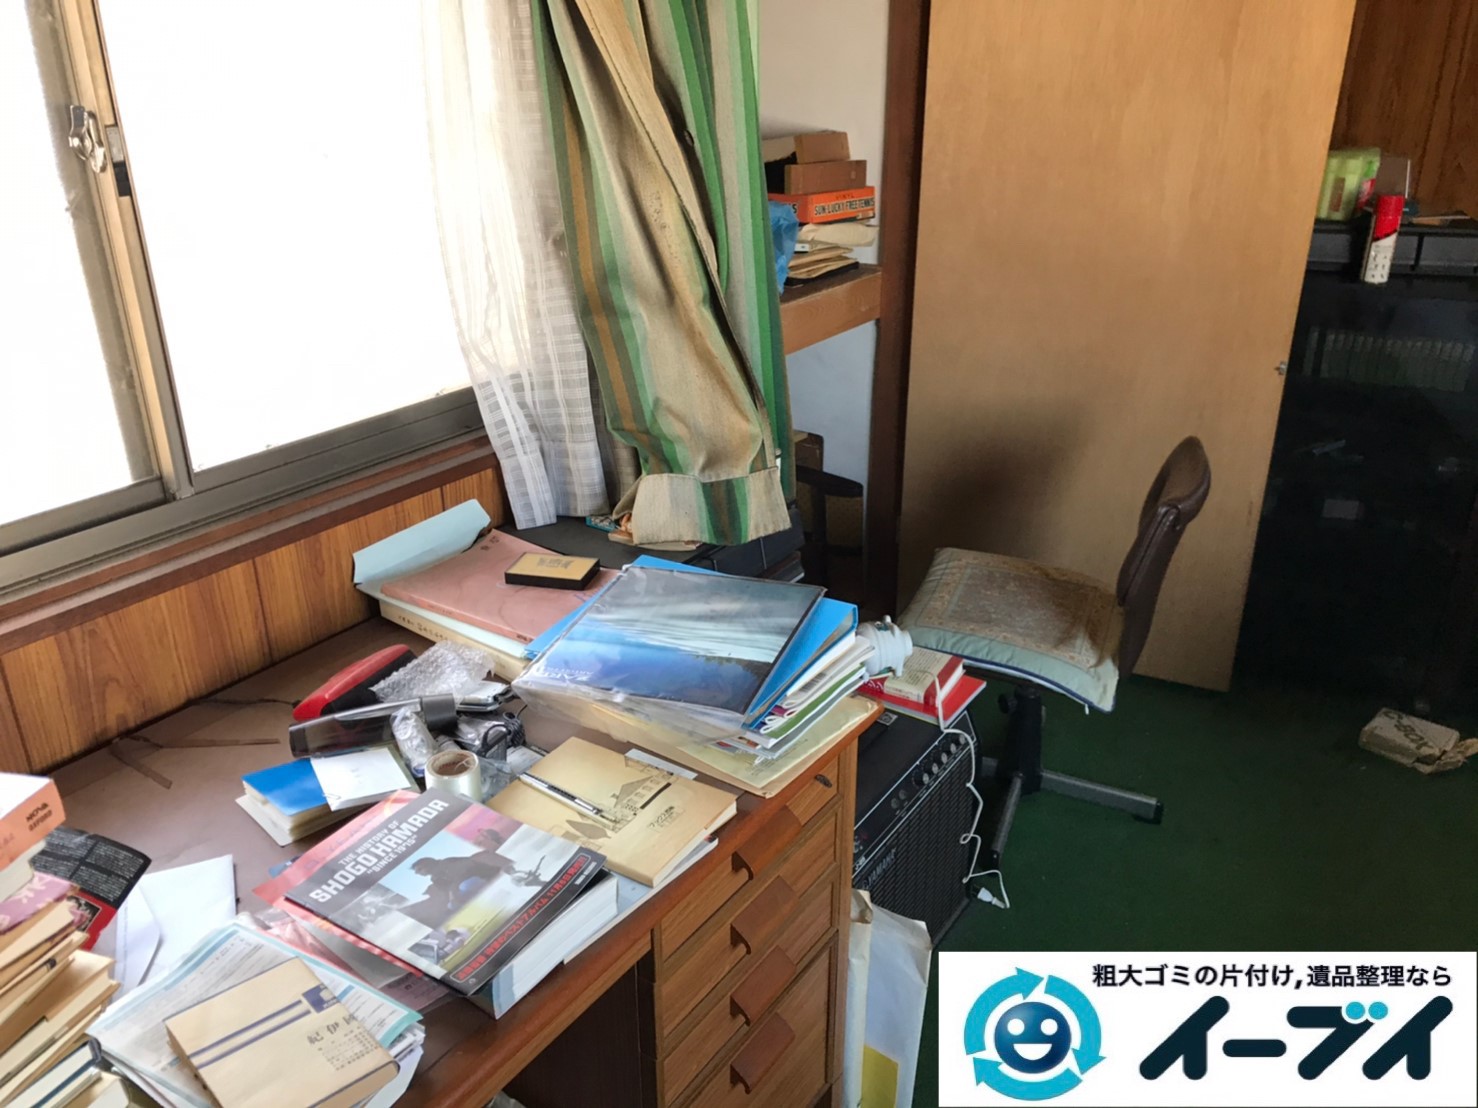 2019年12月24日大阪府藤井寺市でデスクの家具、洗濯機の家電の粗大ゴミ処分をさせていただきました。写真1